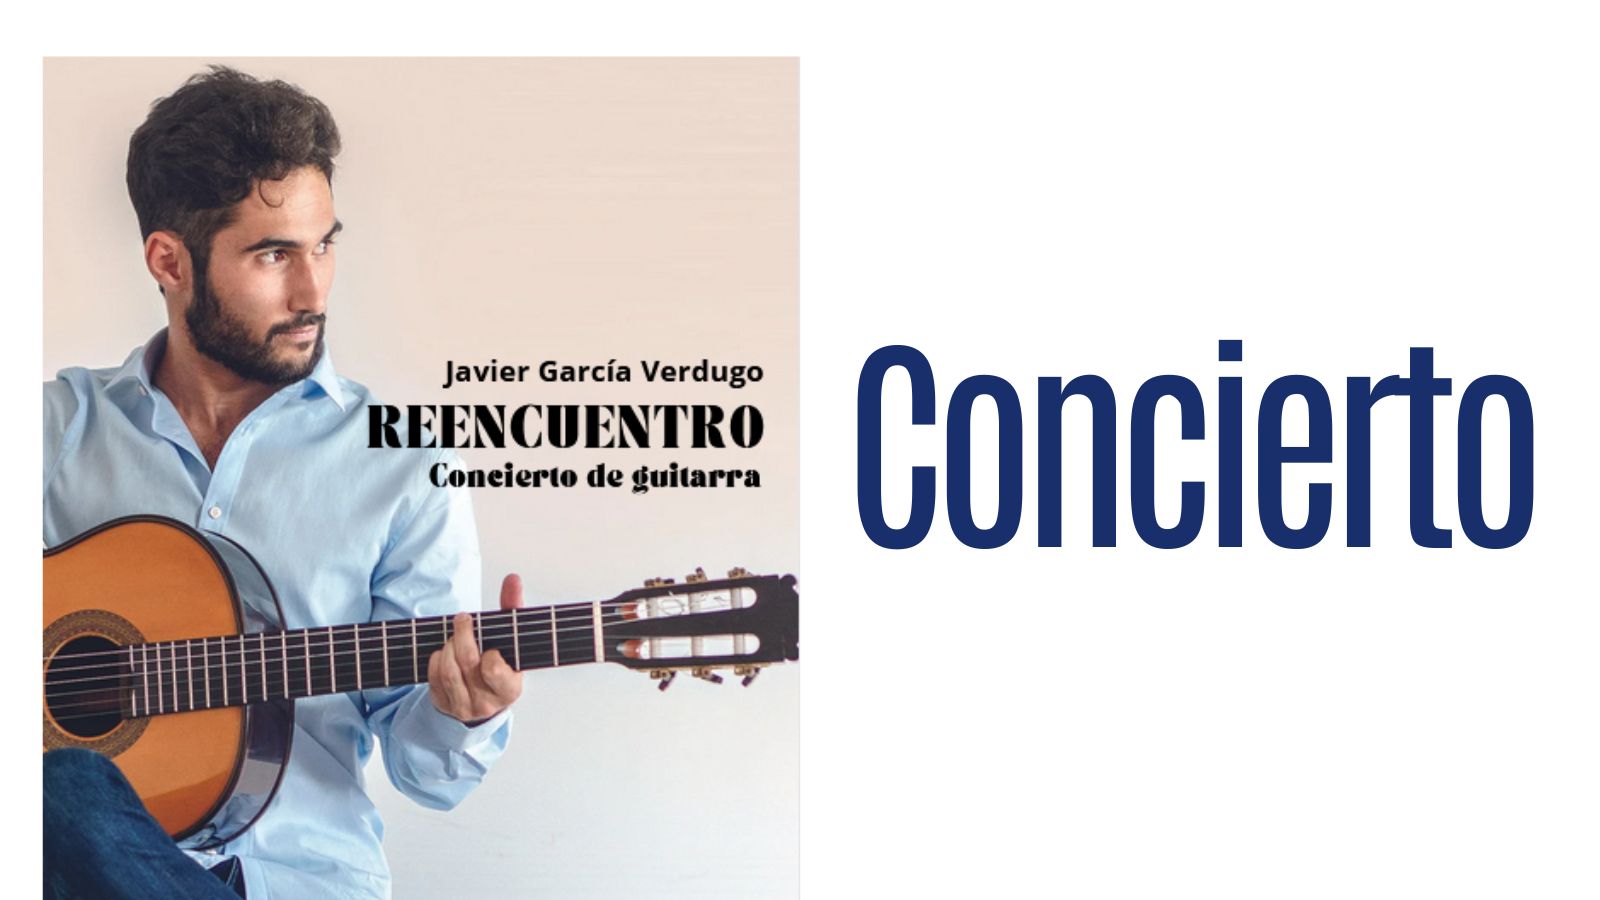 CONCIERTO DE GUITARRA. “REENCUENTRO” de Javier García Verdugo